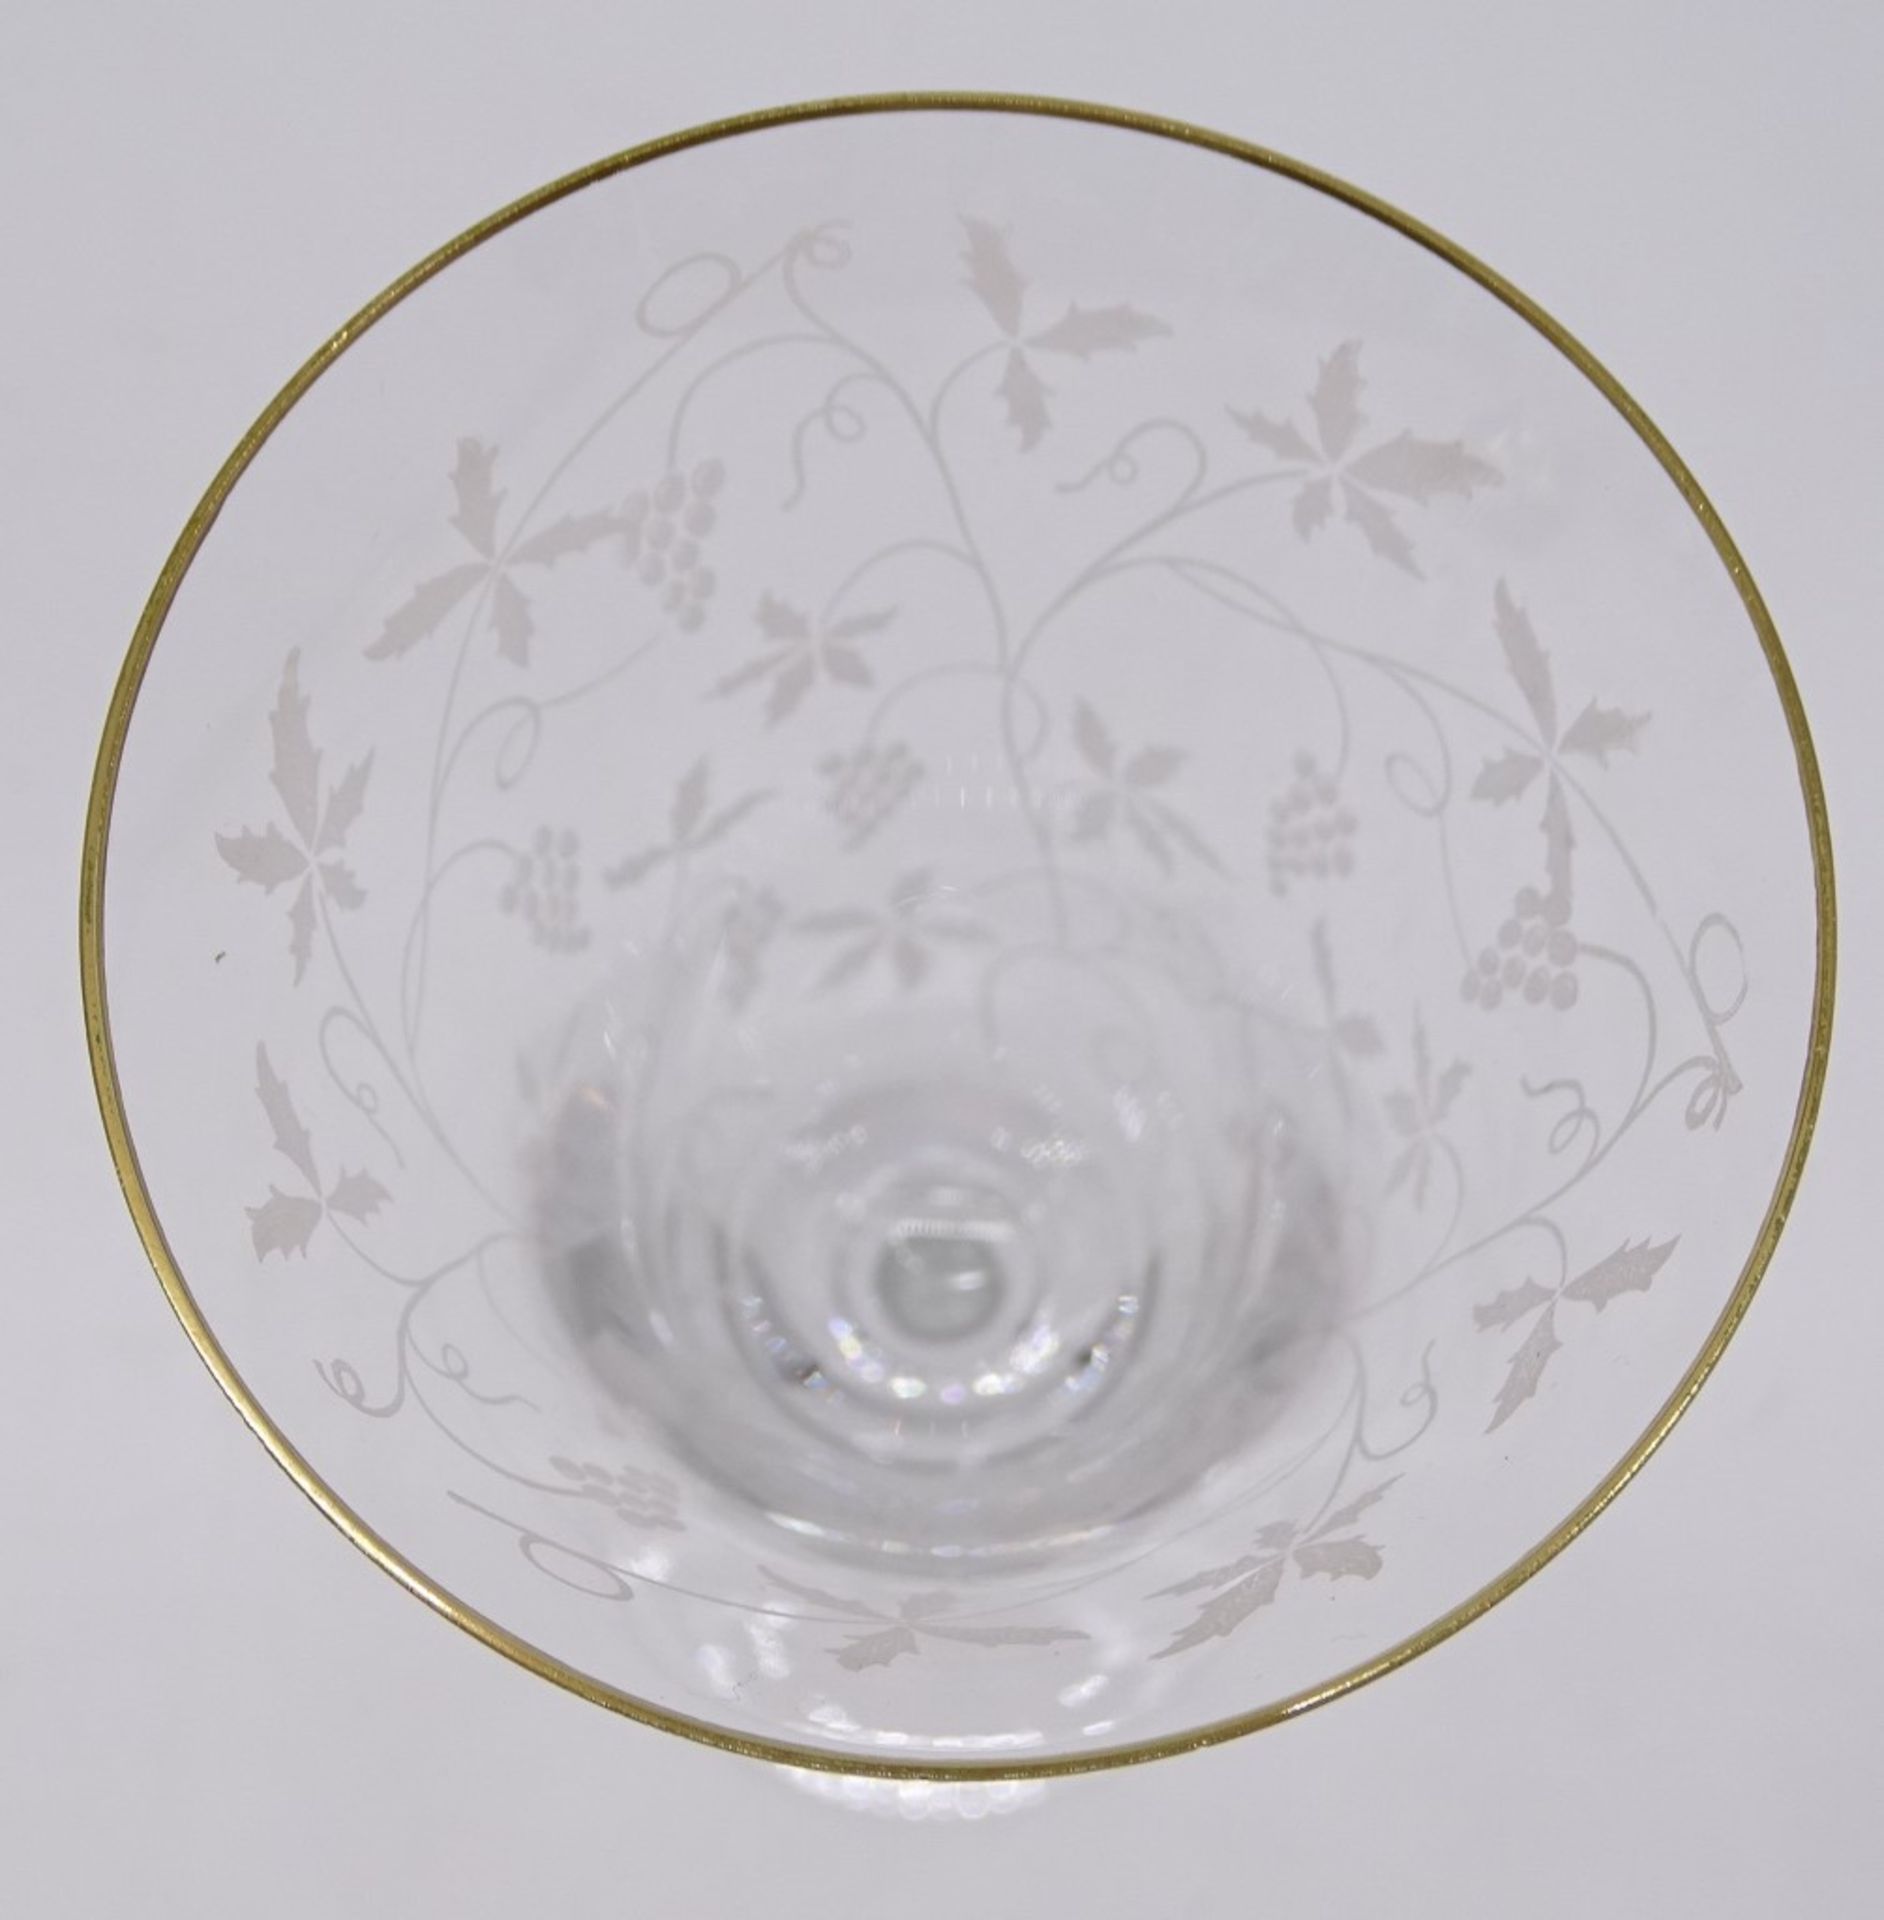 6 Sektkelche mit Weinrankendekor und Goldrand, H. 19 cm, Goldrand stellenweise leicht abgerieben - Bild 4 aus 5